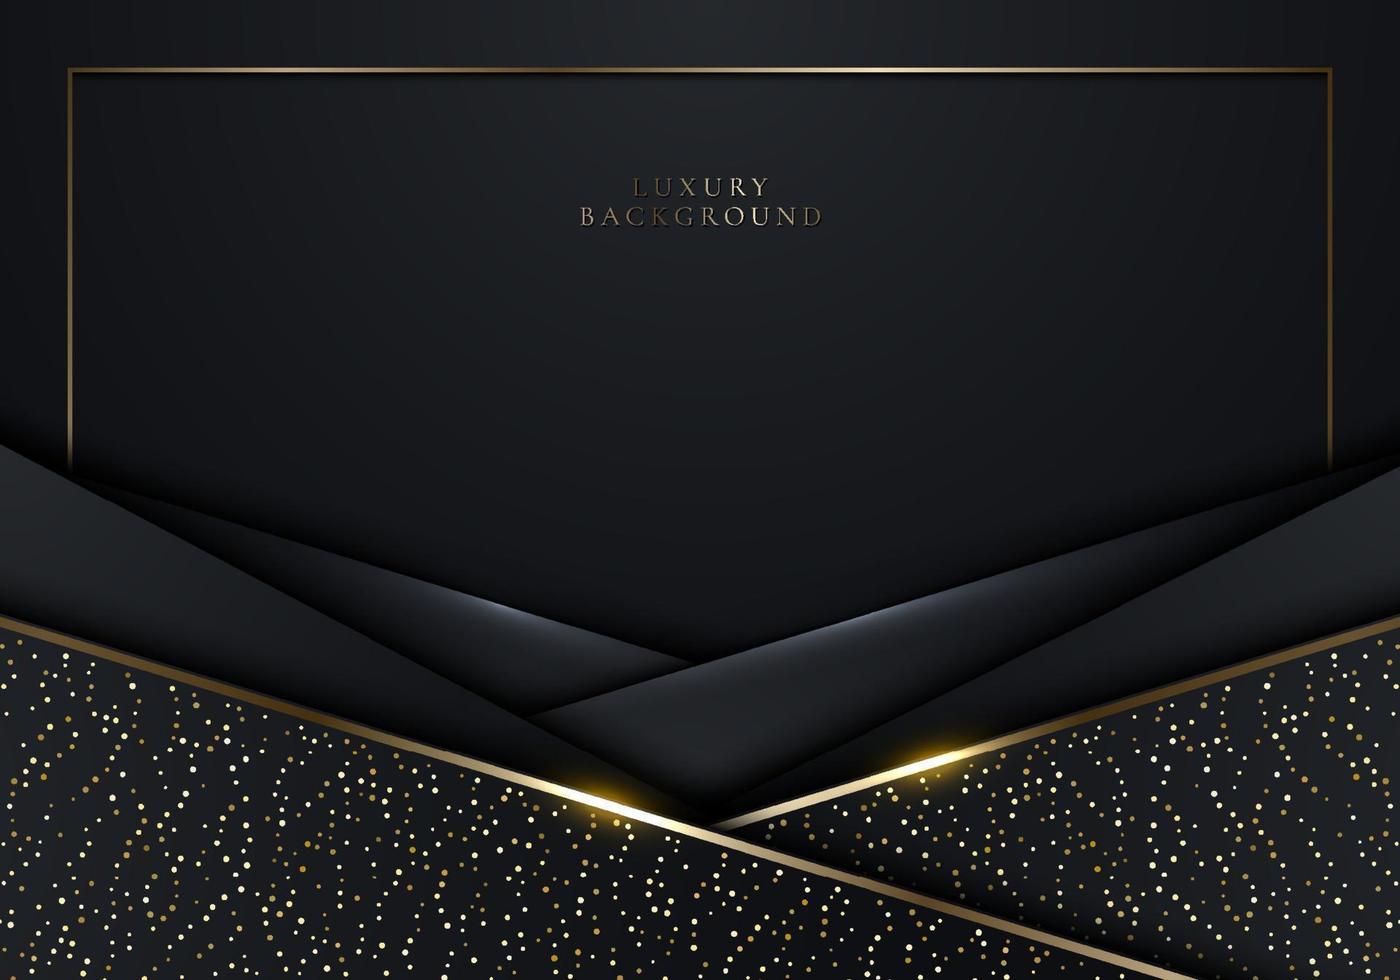 3d moderne luxe banner sjabloonontwerp zwarte strepen vector